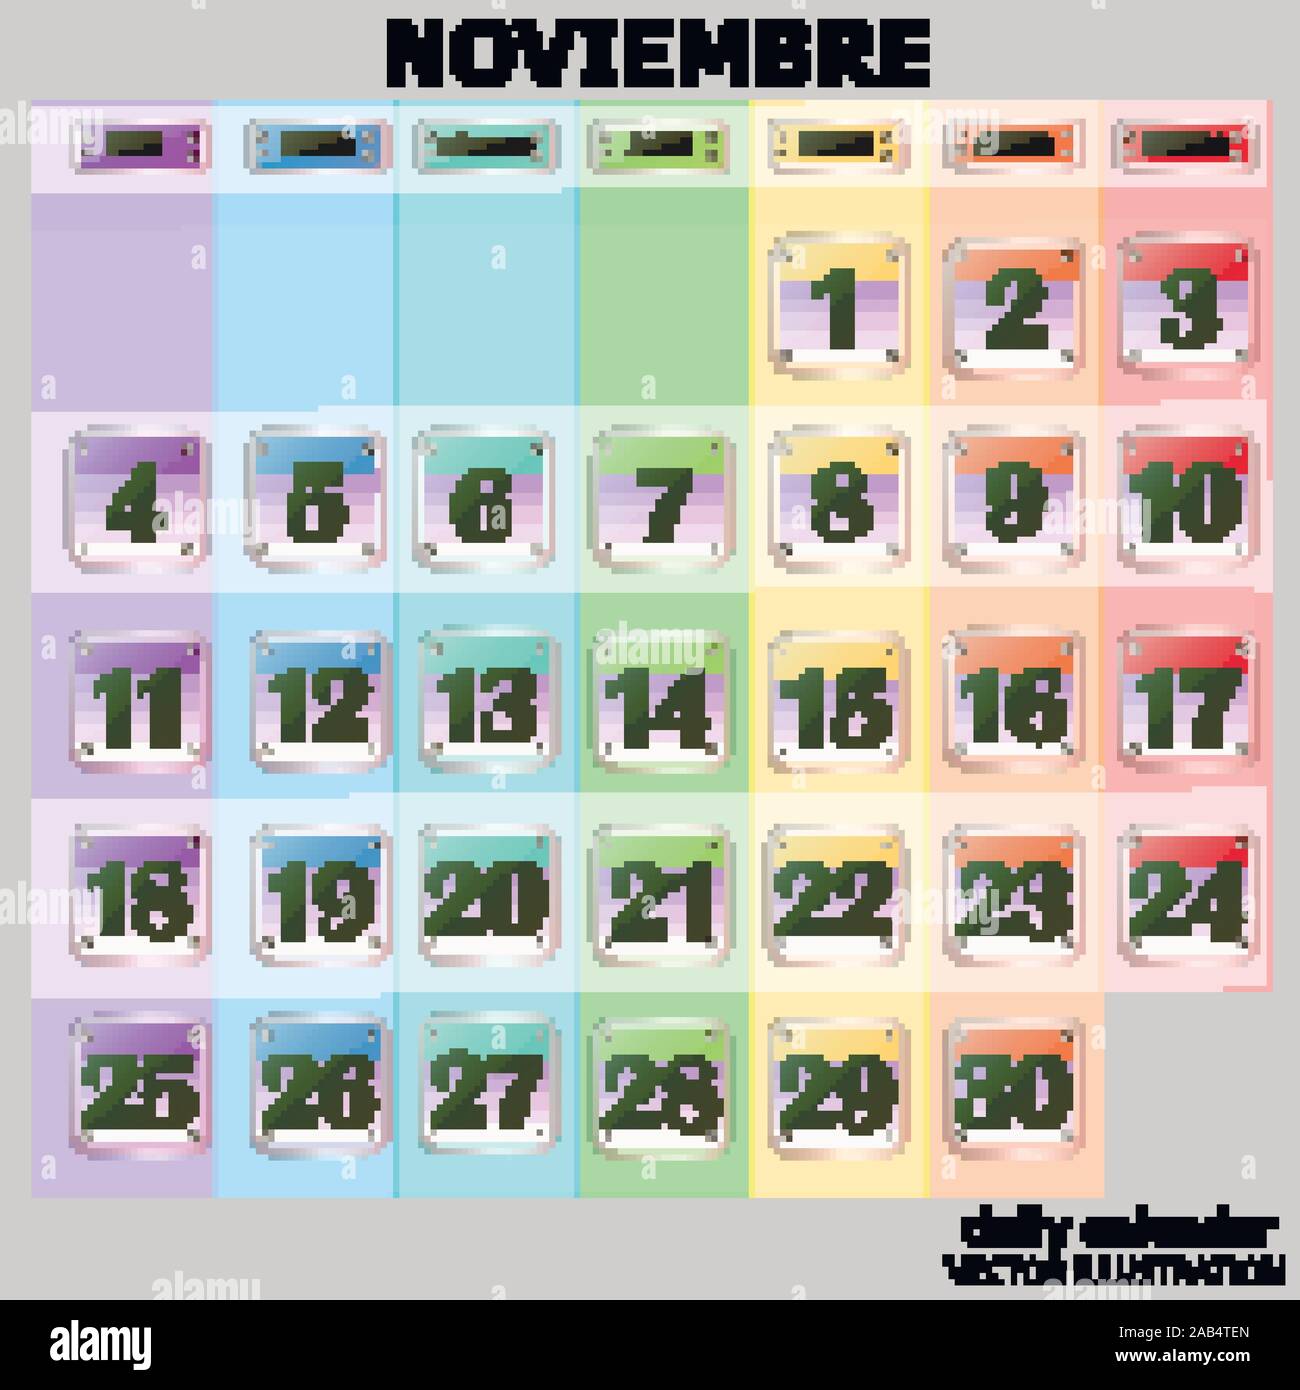 Calendario colorate per novembre 2019 in spagnolo. Set di pulsanti con le date del calendario per il mese di novembre. Per la pianificazione di importanti giorni. Banner per i giorni festivi e giorni speciali. Illustrazione Vettoriale. Illustrazione Vettoriale